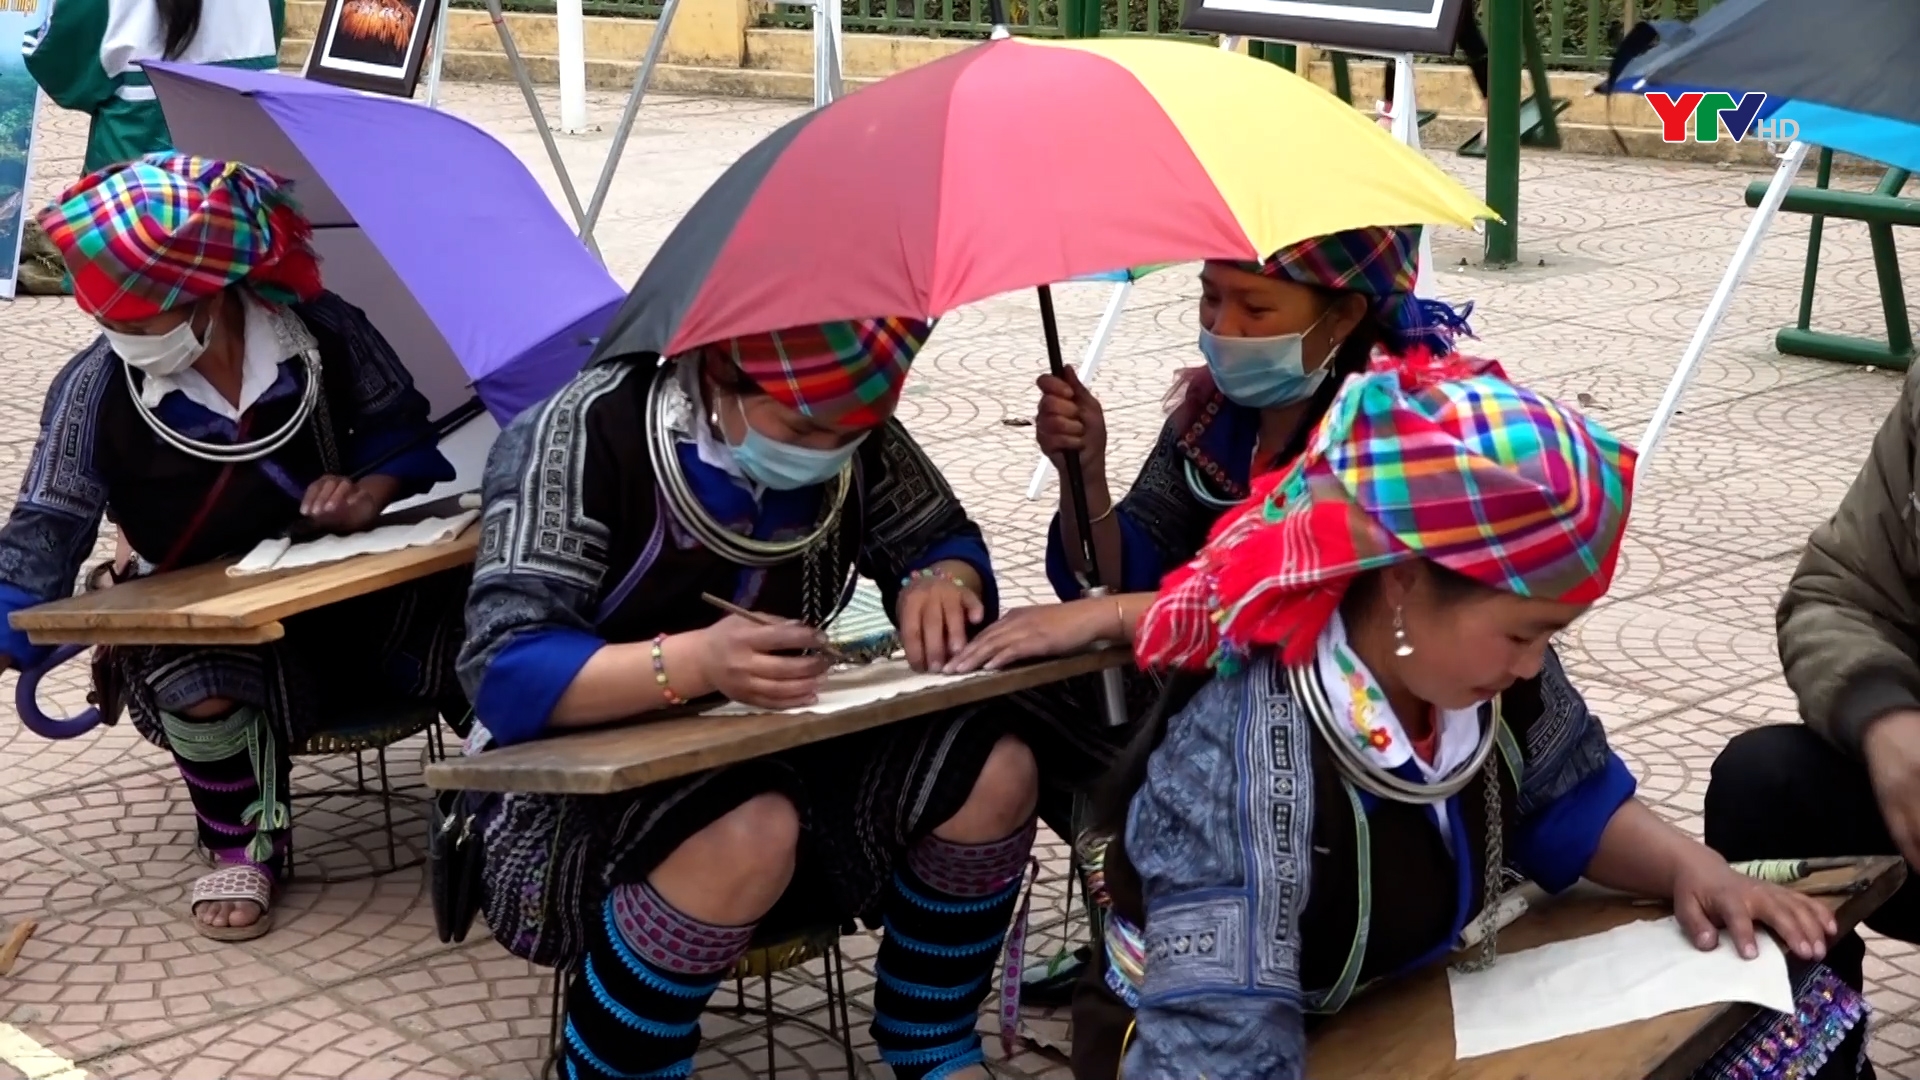 Huyện Mù Cang Chải tổ chức cuộc thi vẽ hoa văn bằng sáp ong trên vải